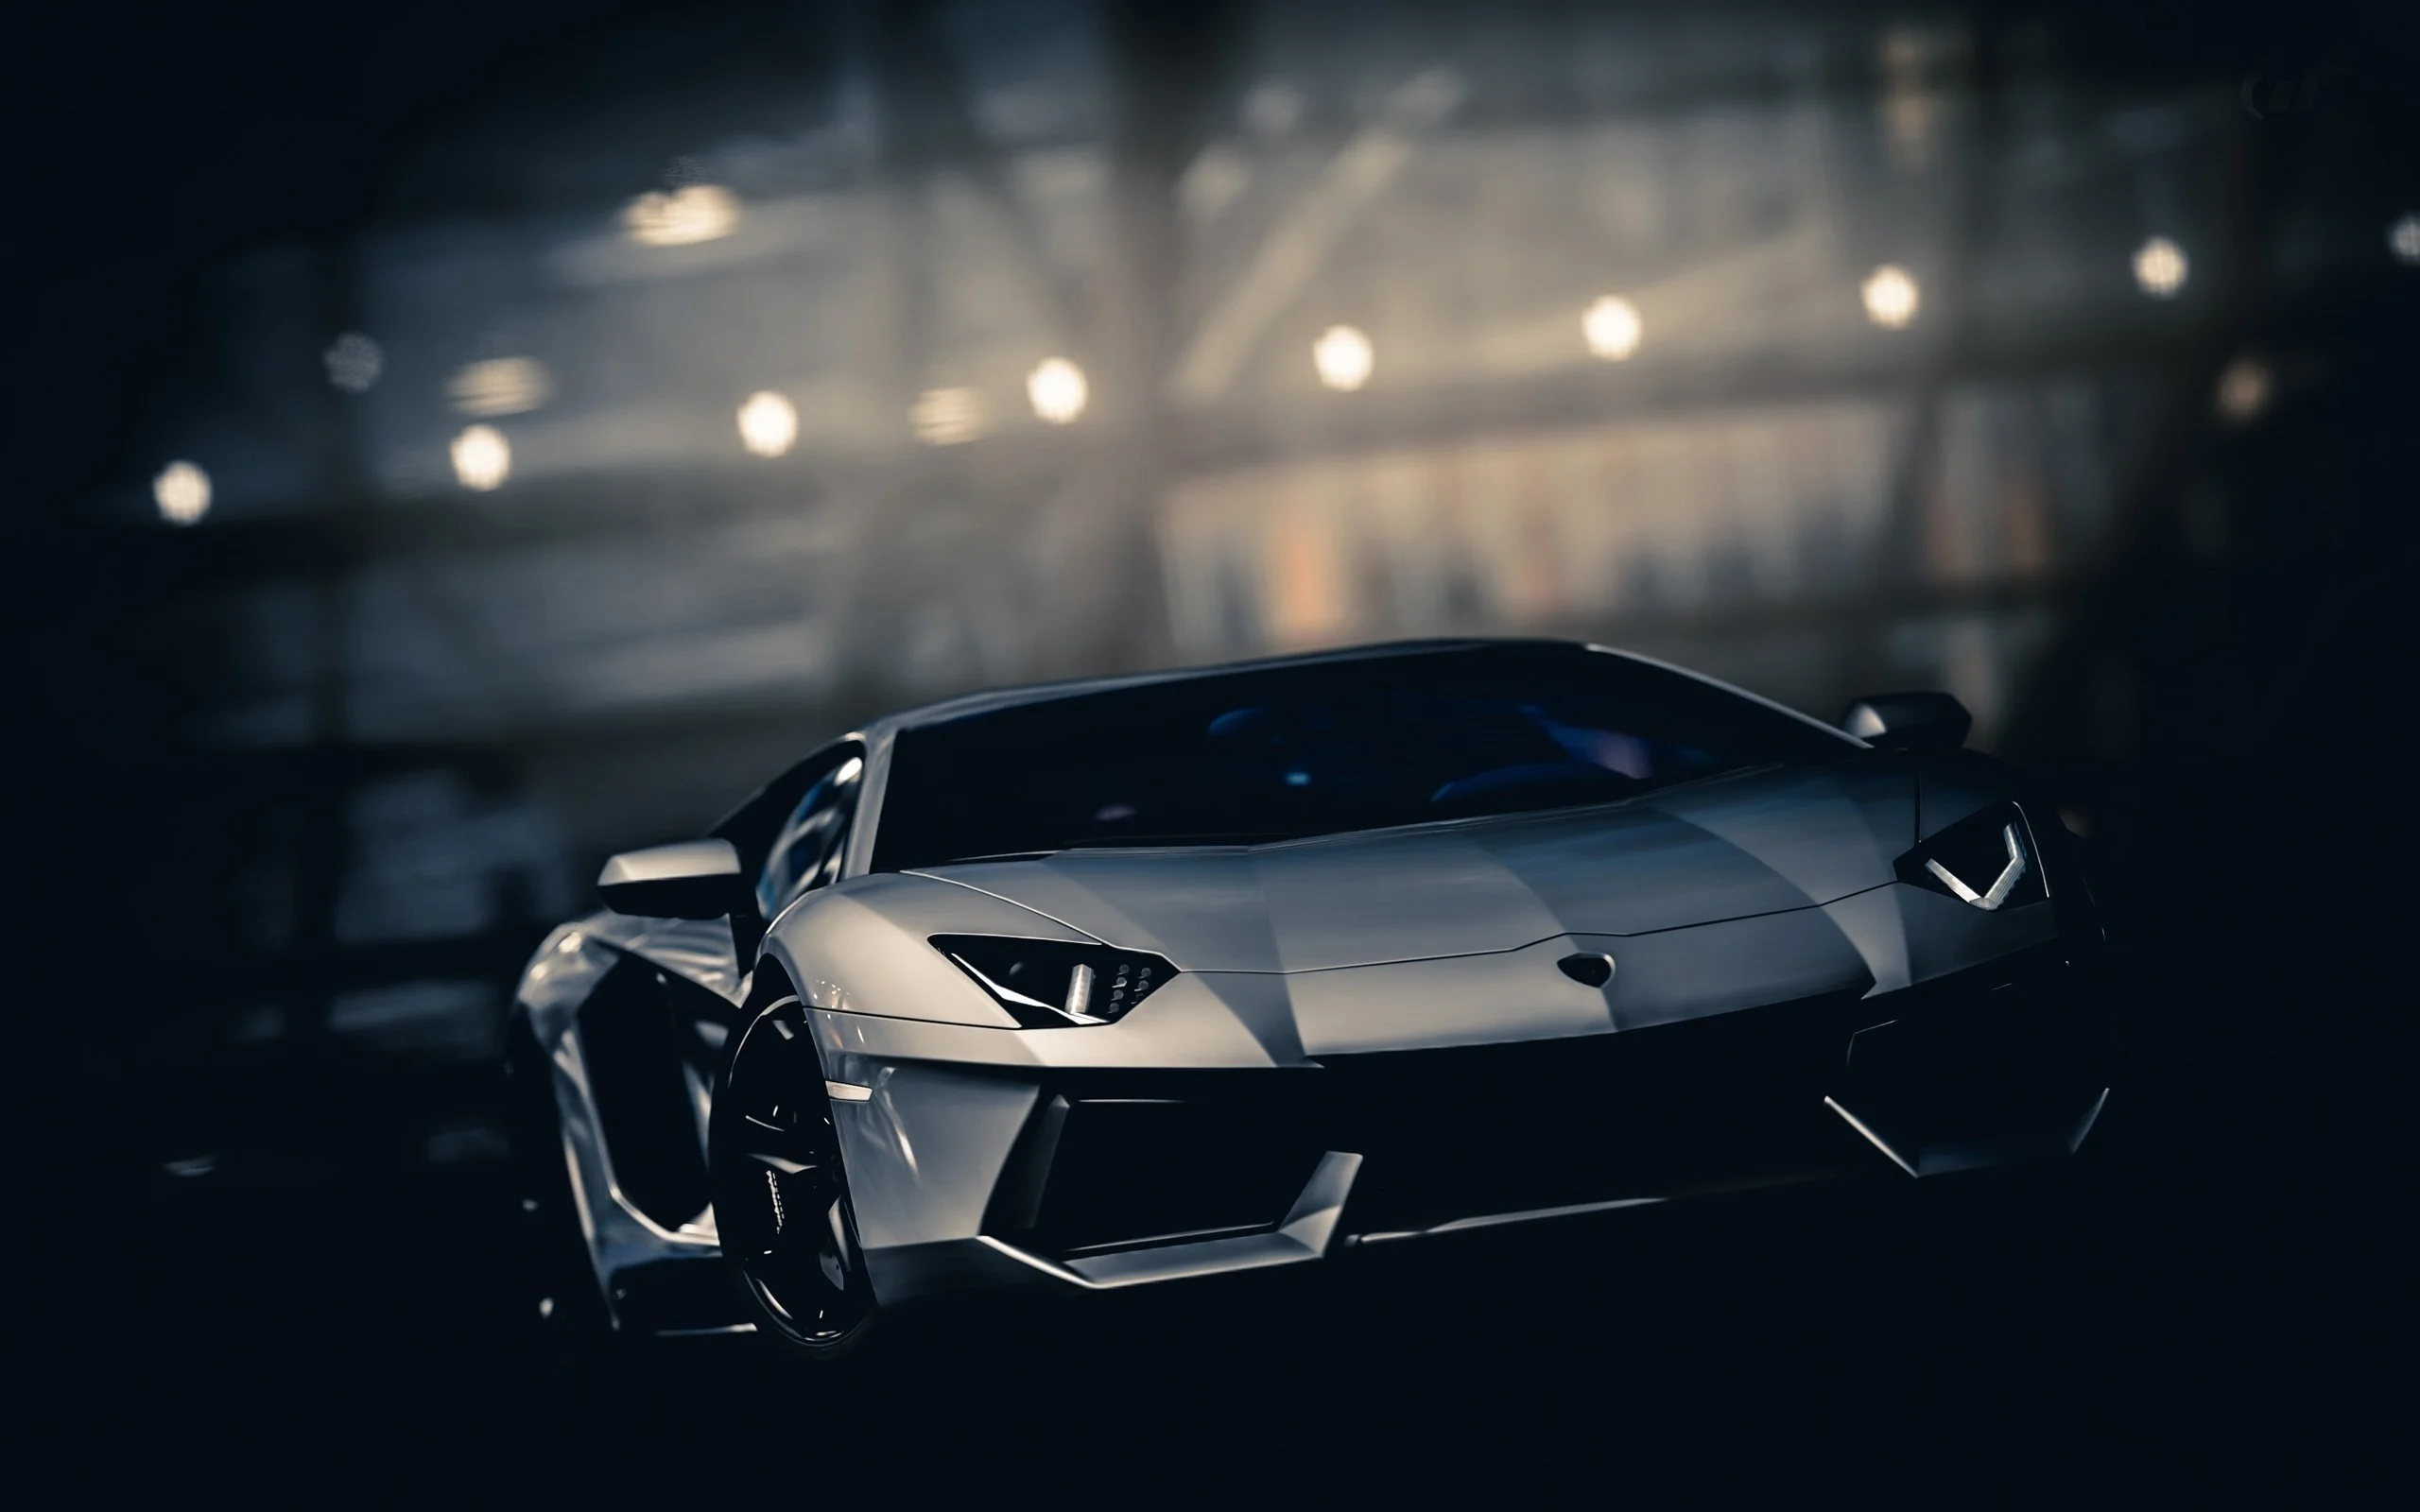 Lamborghini là một thương hiệu xe sang trọng, đẳng cấp và rất được yêu thích. Với những chiếc siêu xe đầy uy tín, đẹp mắt và tuyệt vời, bất cứ ai cũng phải trầm trồ và ngưỡng mộ. Hãy cùng ngắm nhìn hình ảnh về Lamborghini để tận hưởng vẻ đẹp và sức hút của những chiếc siêu xe này.